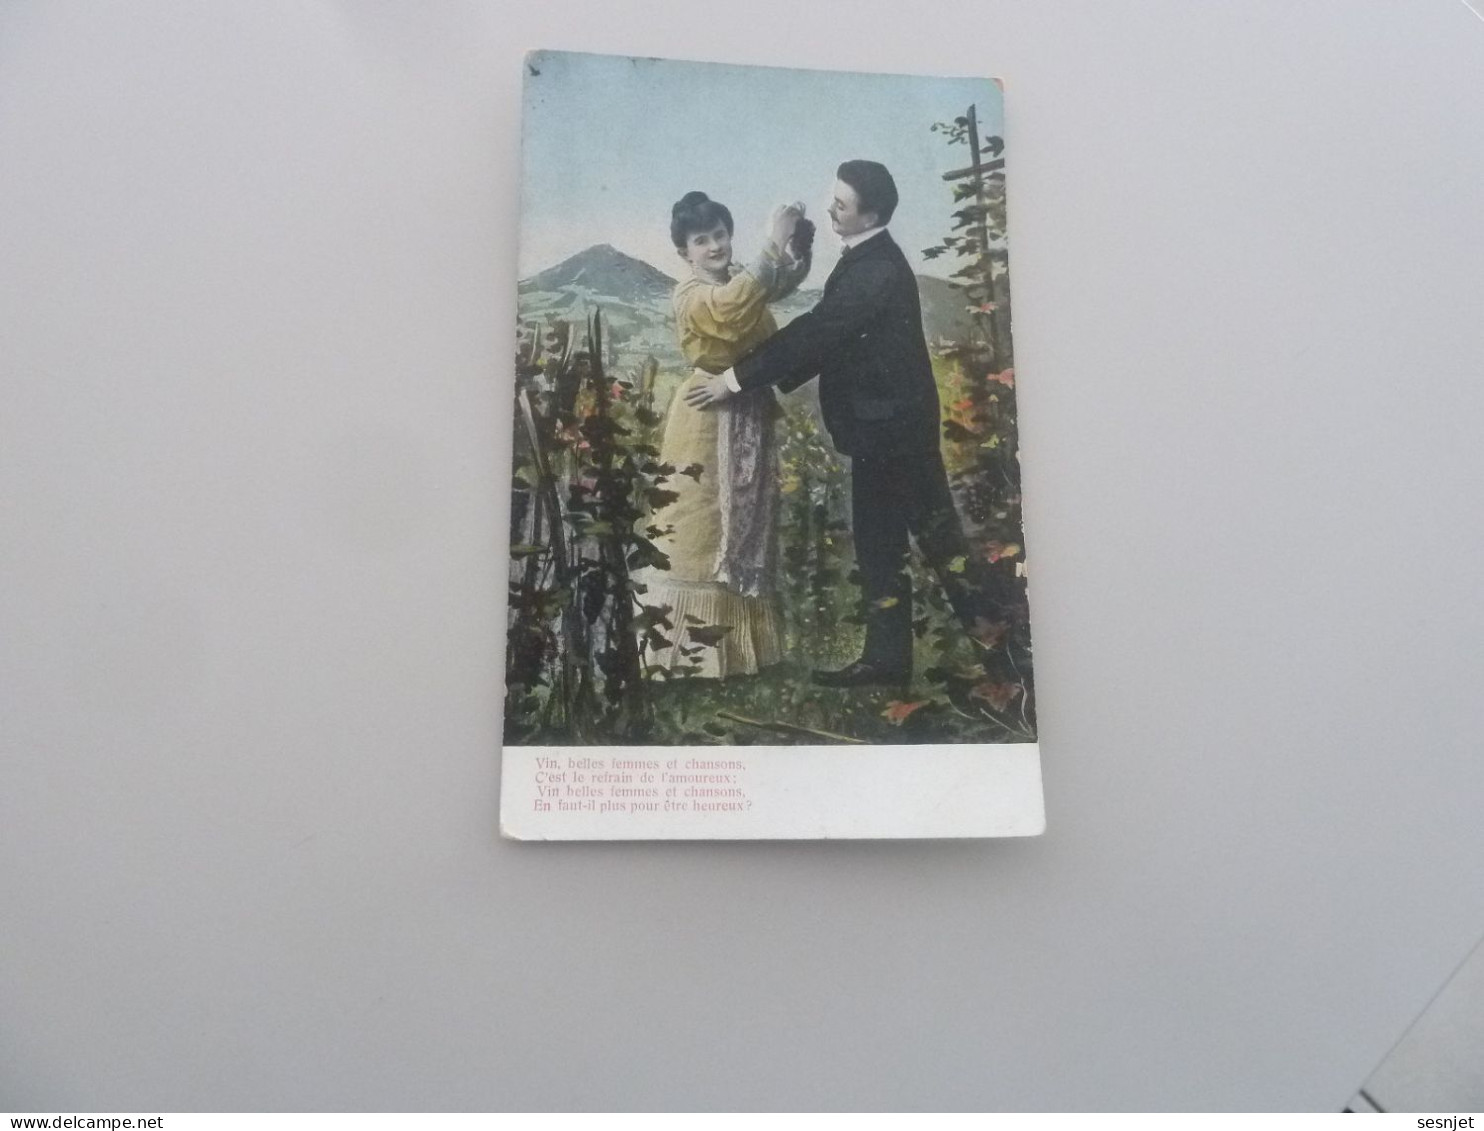 Saint-Jean - Vin, Belles Femmes Et Chansons - N° 450 - Yt 111 - Editions Union Postale Universelle - Année 1905 - - Couples